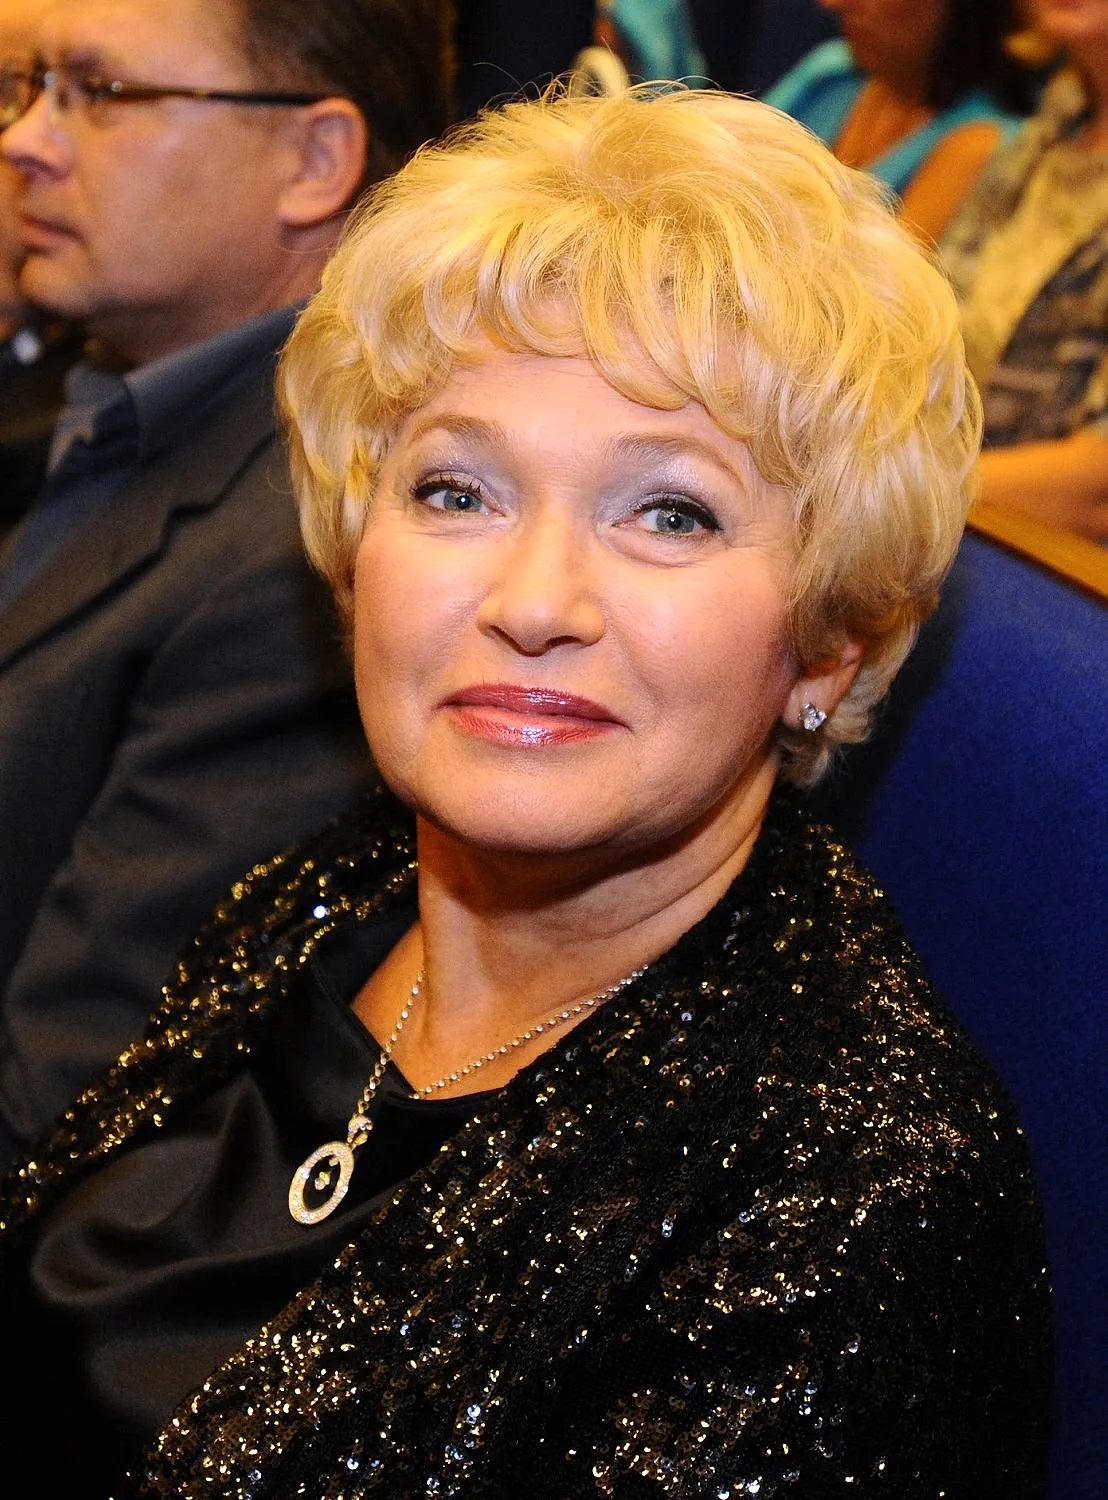 Нарусова Людмила Борисовна